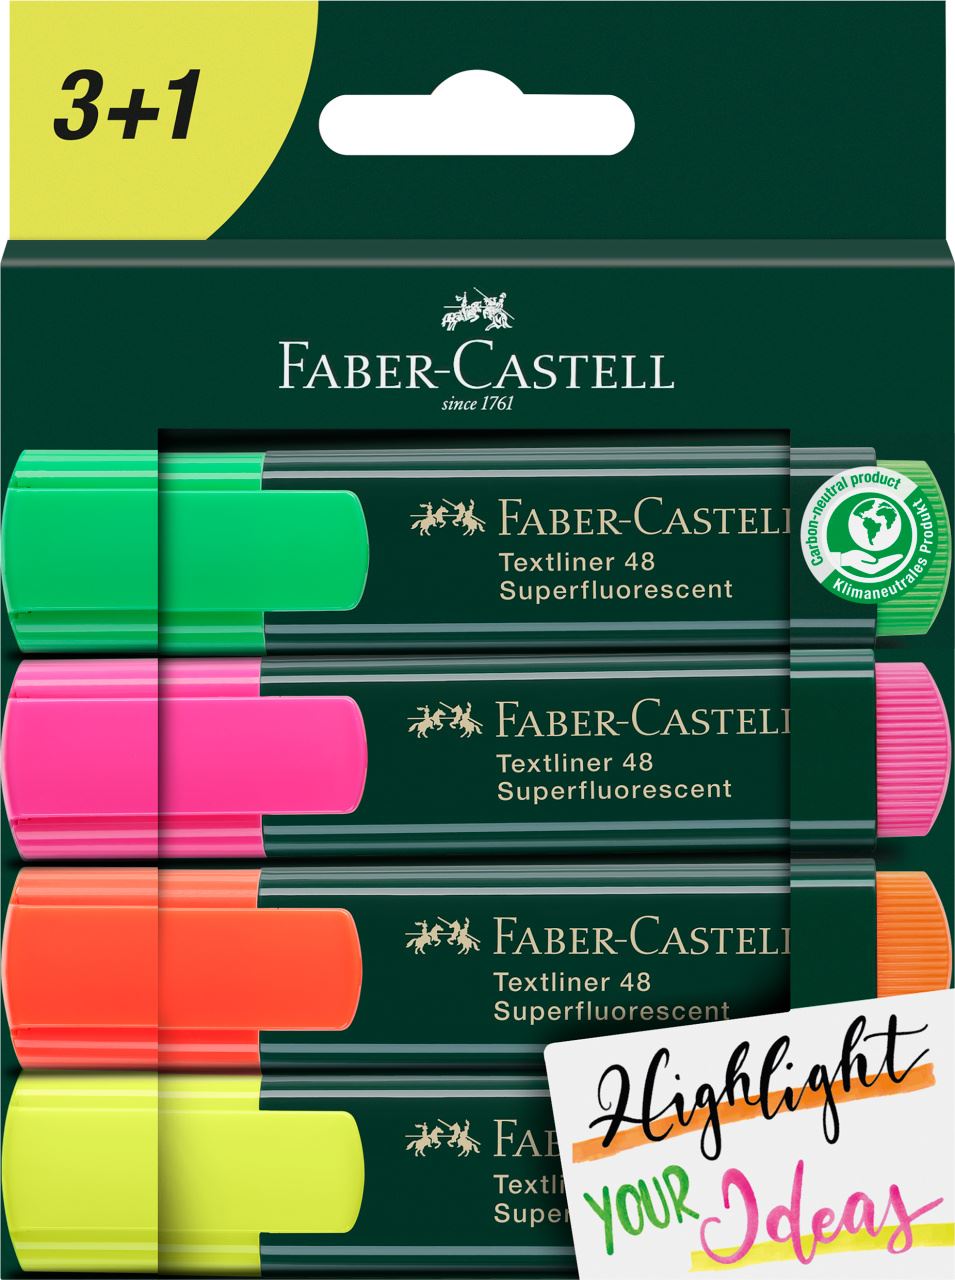 Faber-Castell - Υπογραμμιστής Textliner 48 wallet of 4 3+1